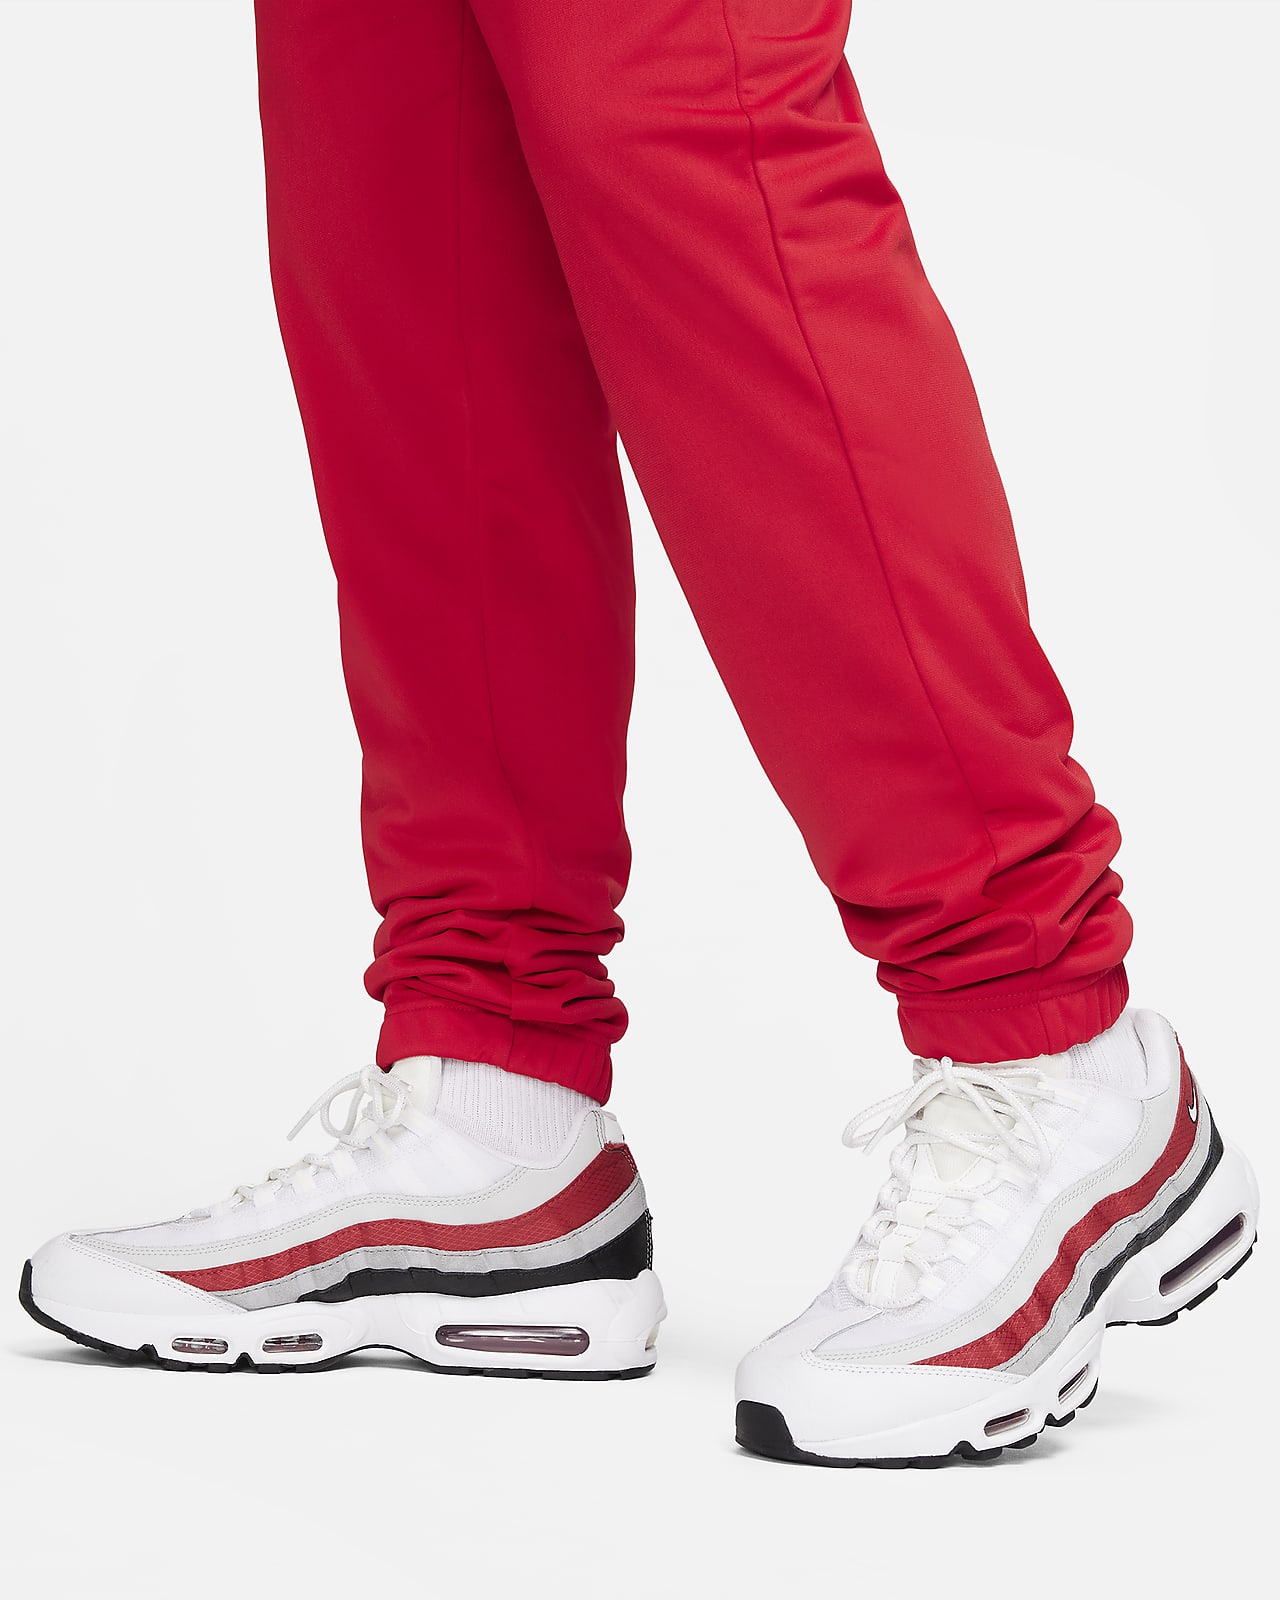 Survêtement en maille de polyester Nike Sportswear Sport